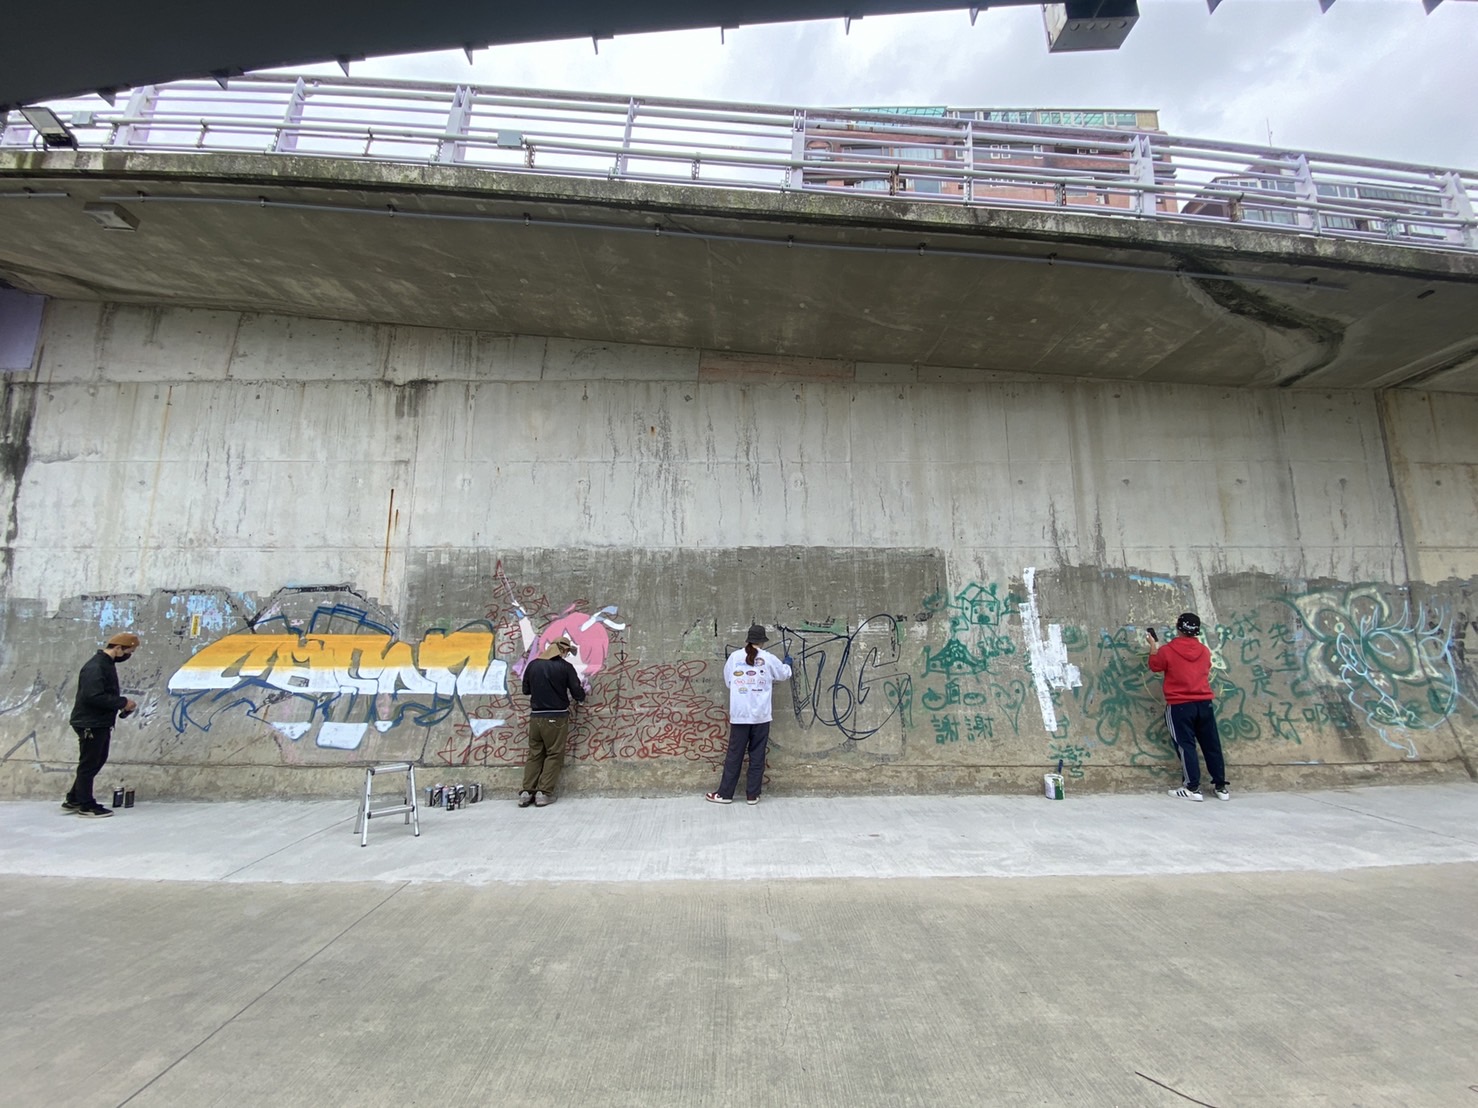 博愛陸橋堤外塗鴉牆提供中永和民眾揮灑創作空間